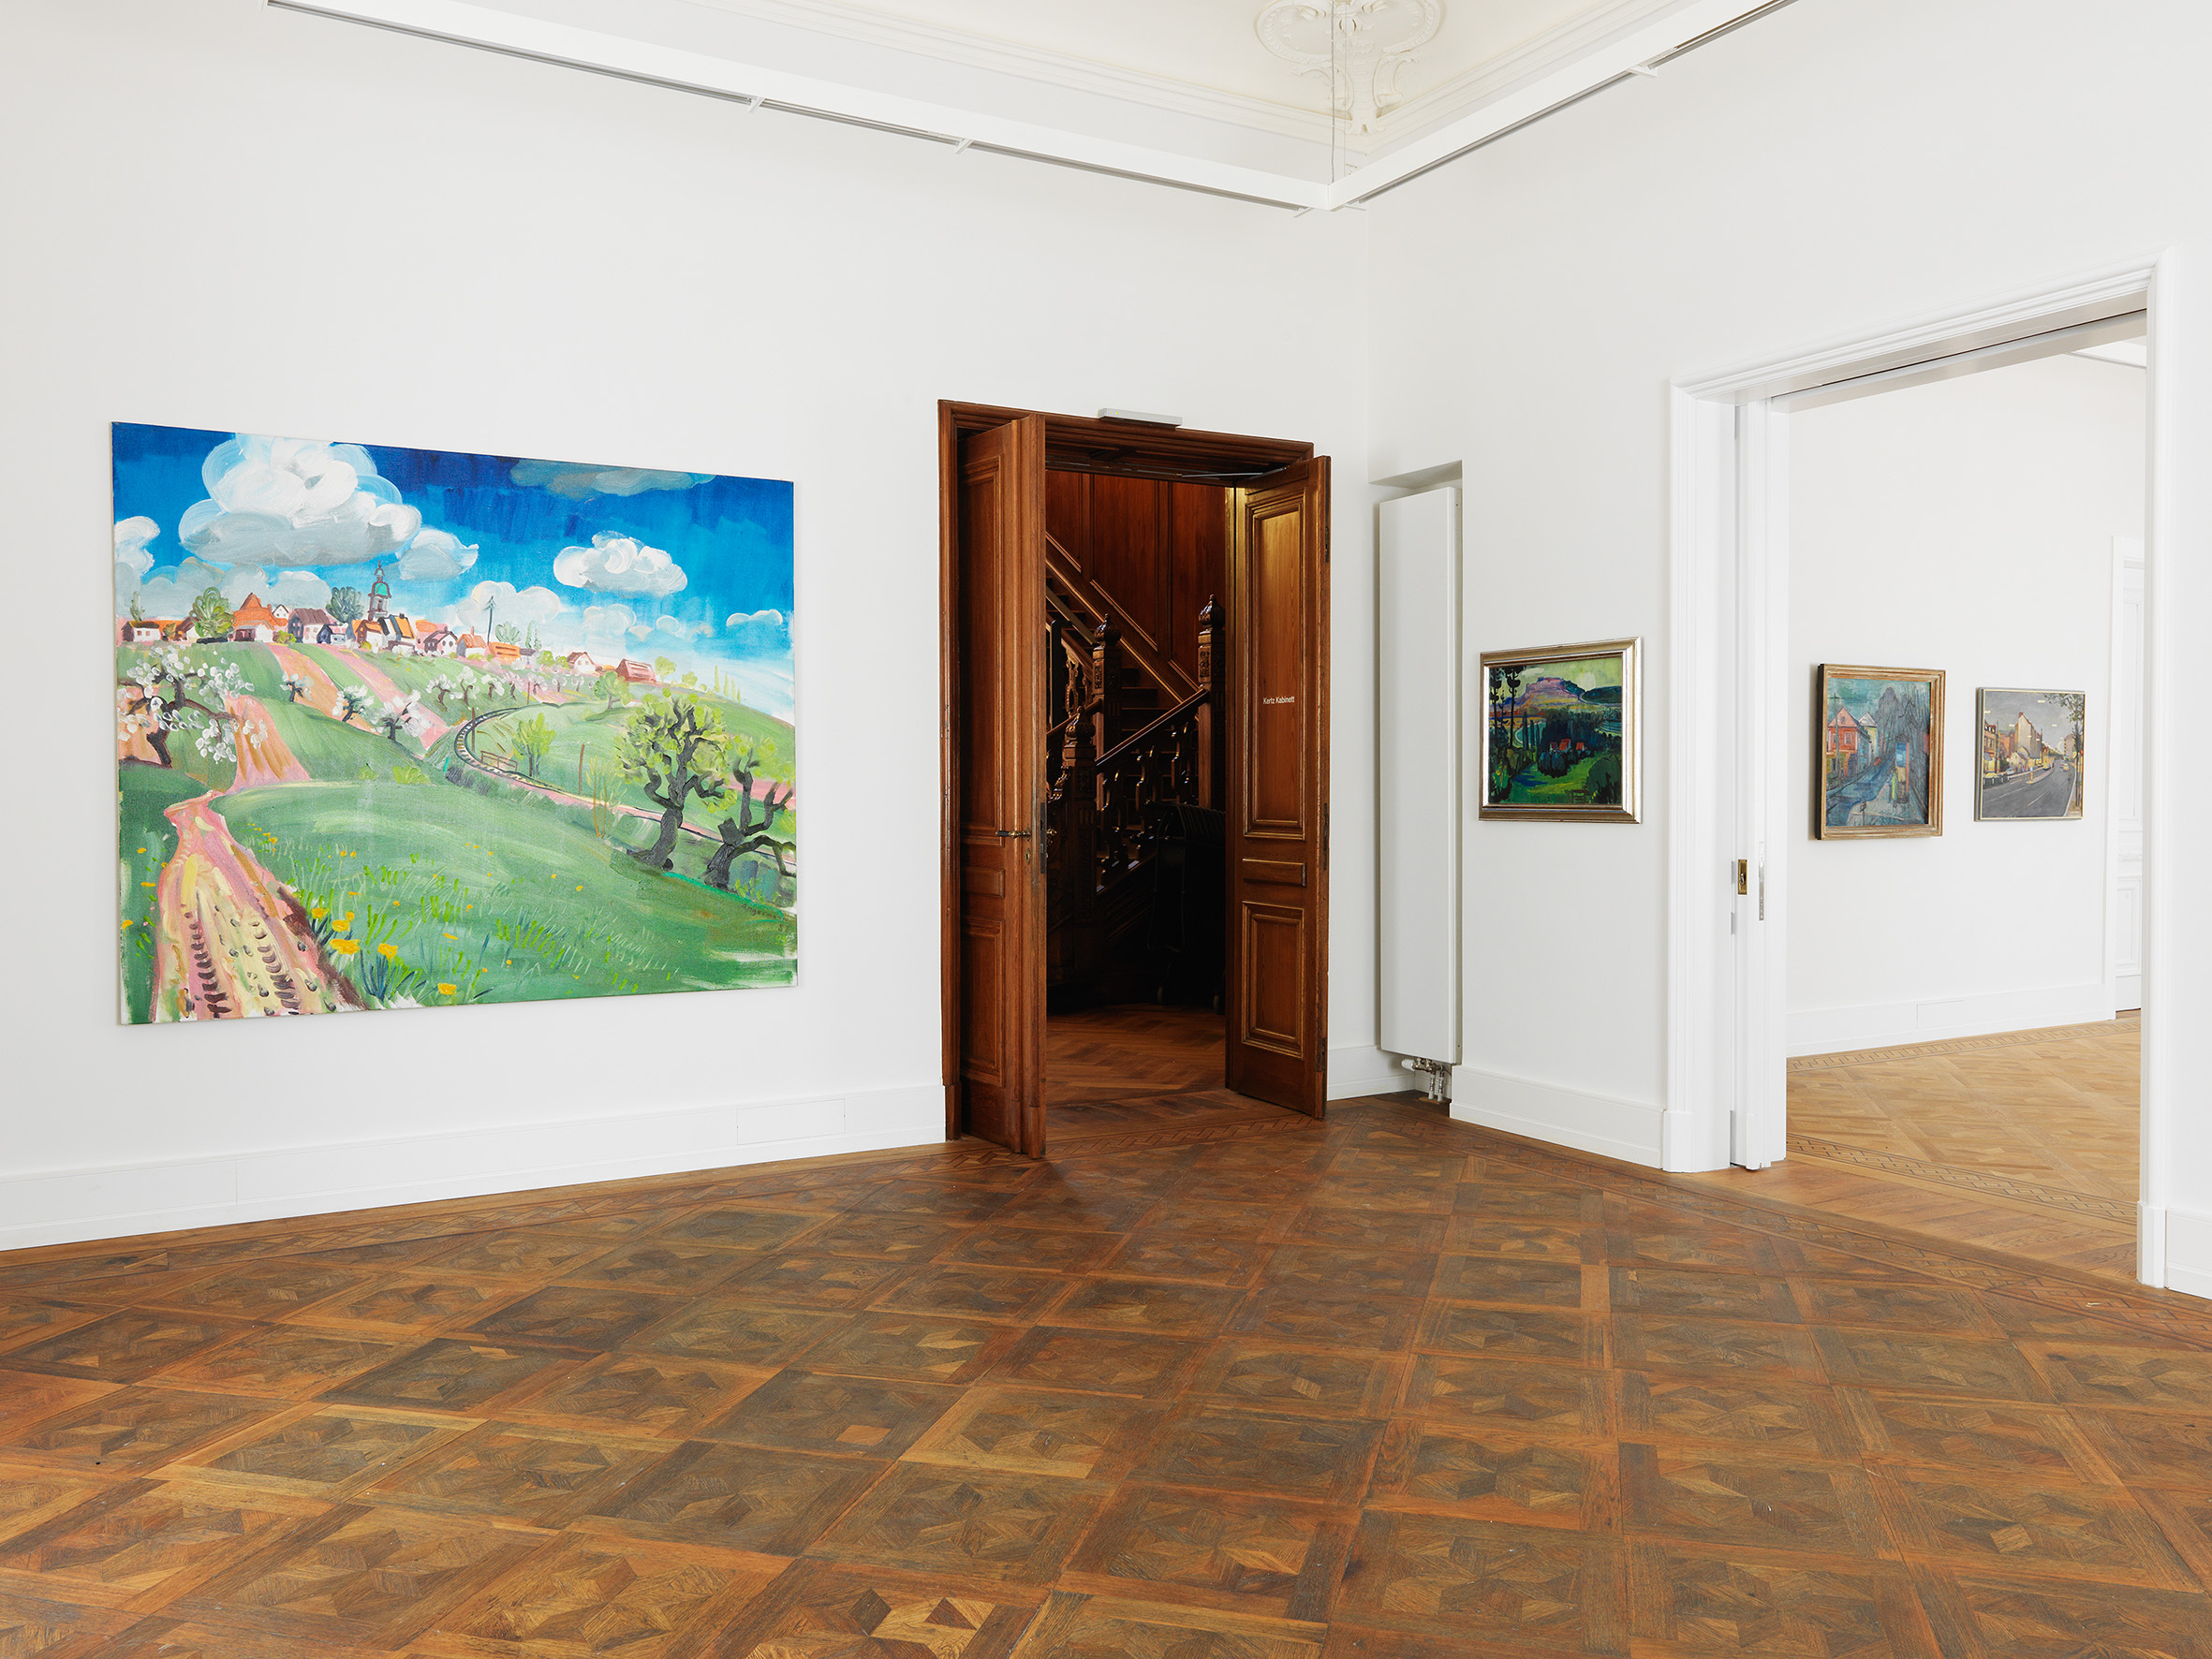 Ein Ausstellungsraum in der Kunstvilla mit Gemälden an der Wand. Durch die beiden Eingänge führen einmal in das Treppenhaus und dann in einen weiteren Ausstellungsraum.